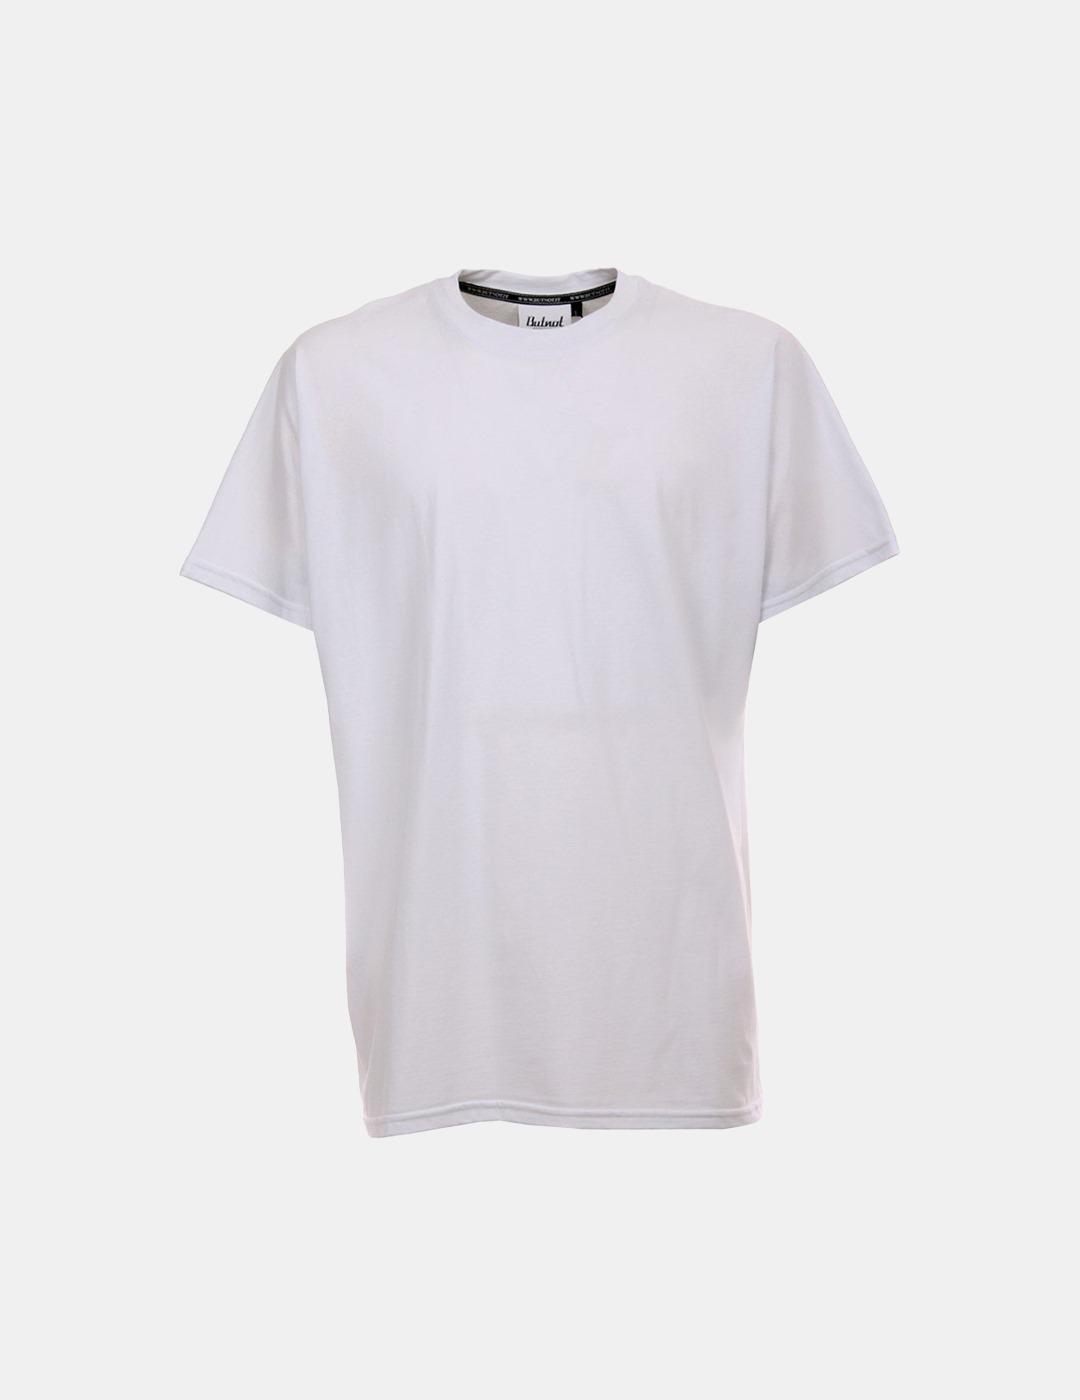 Camiseta Butnot Stampa Serpente Blanco Para Hombre